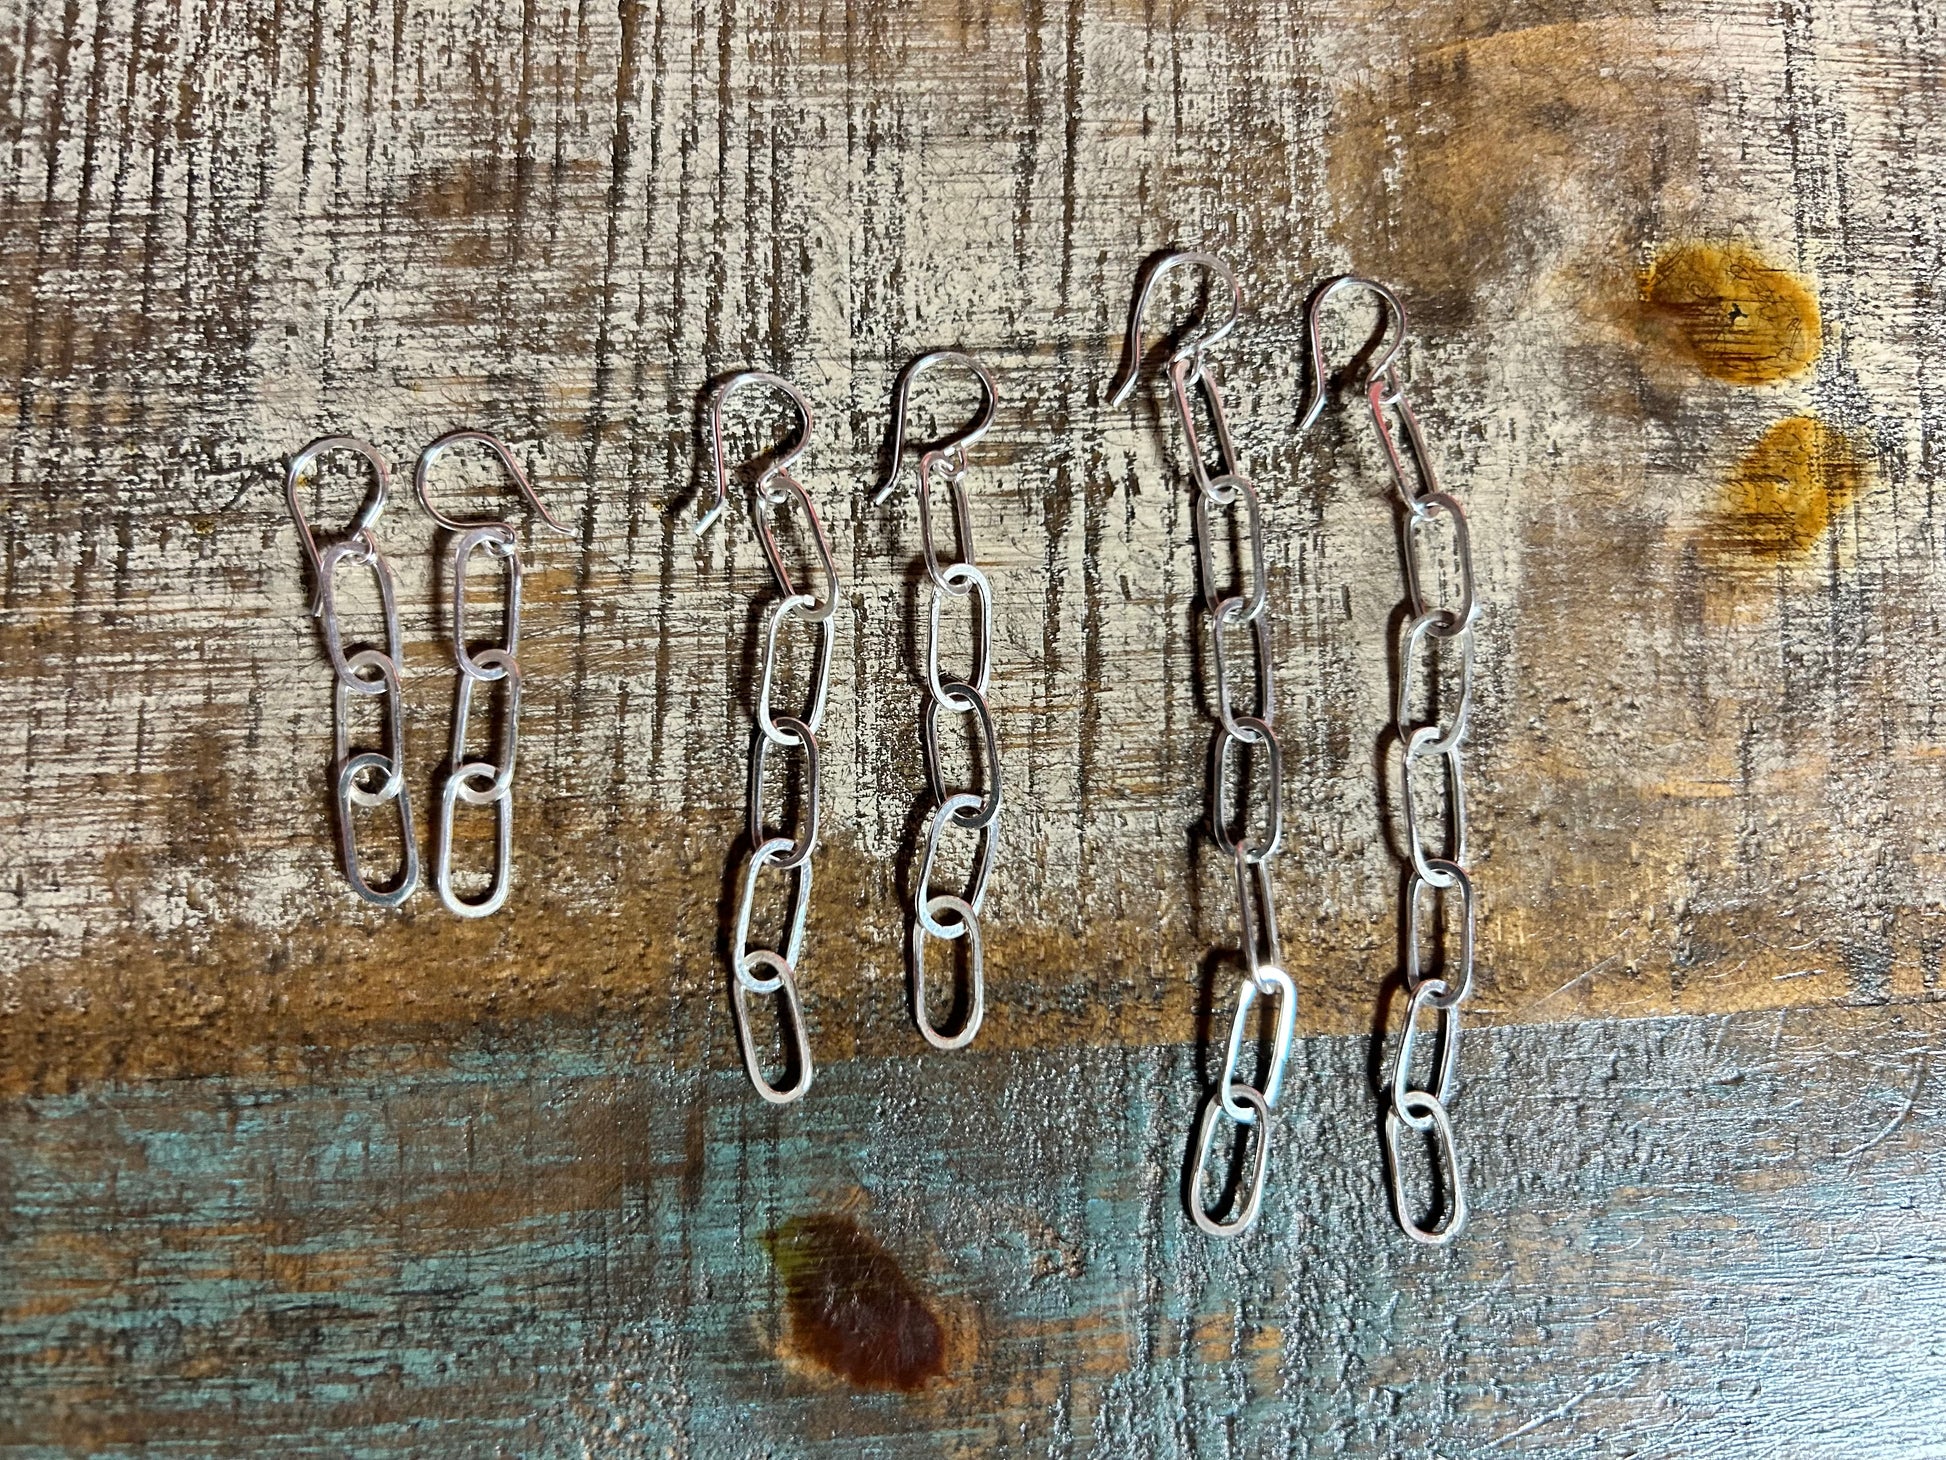 Paperclip Chain Earrings - Jennifer Cervelli Jewelry